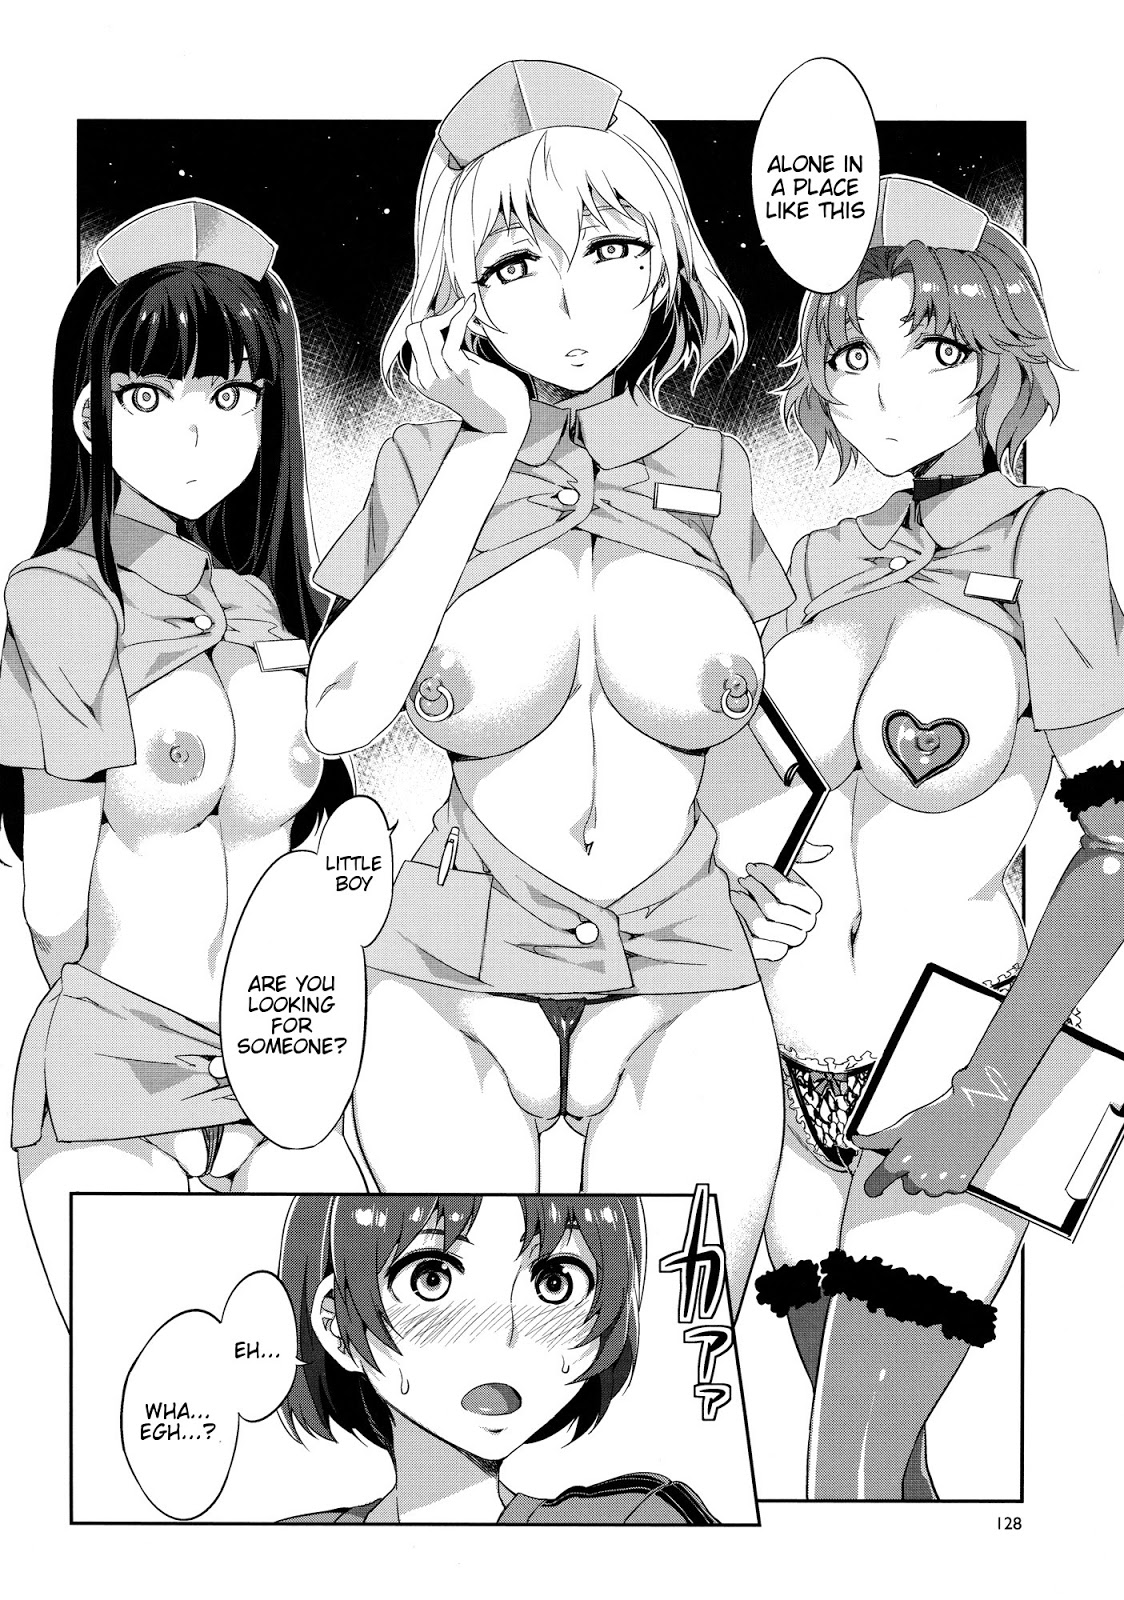 comics porno manga hentai imagenes porno hentai videos hentai videos free porn full hentai 7